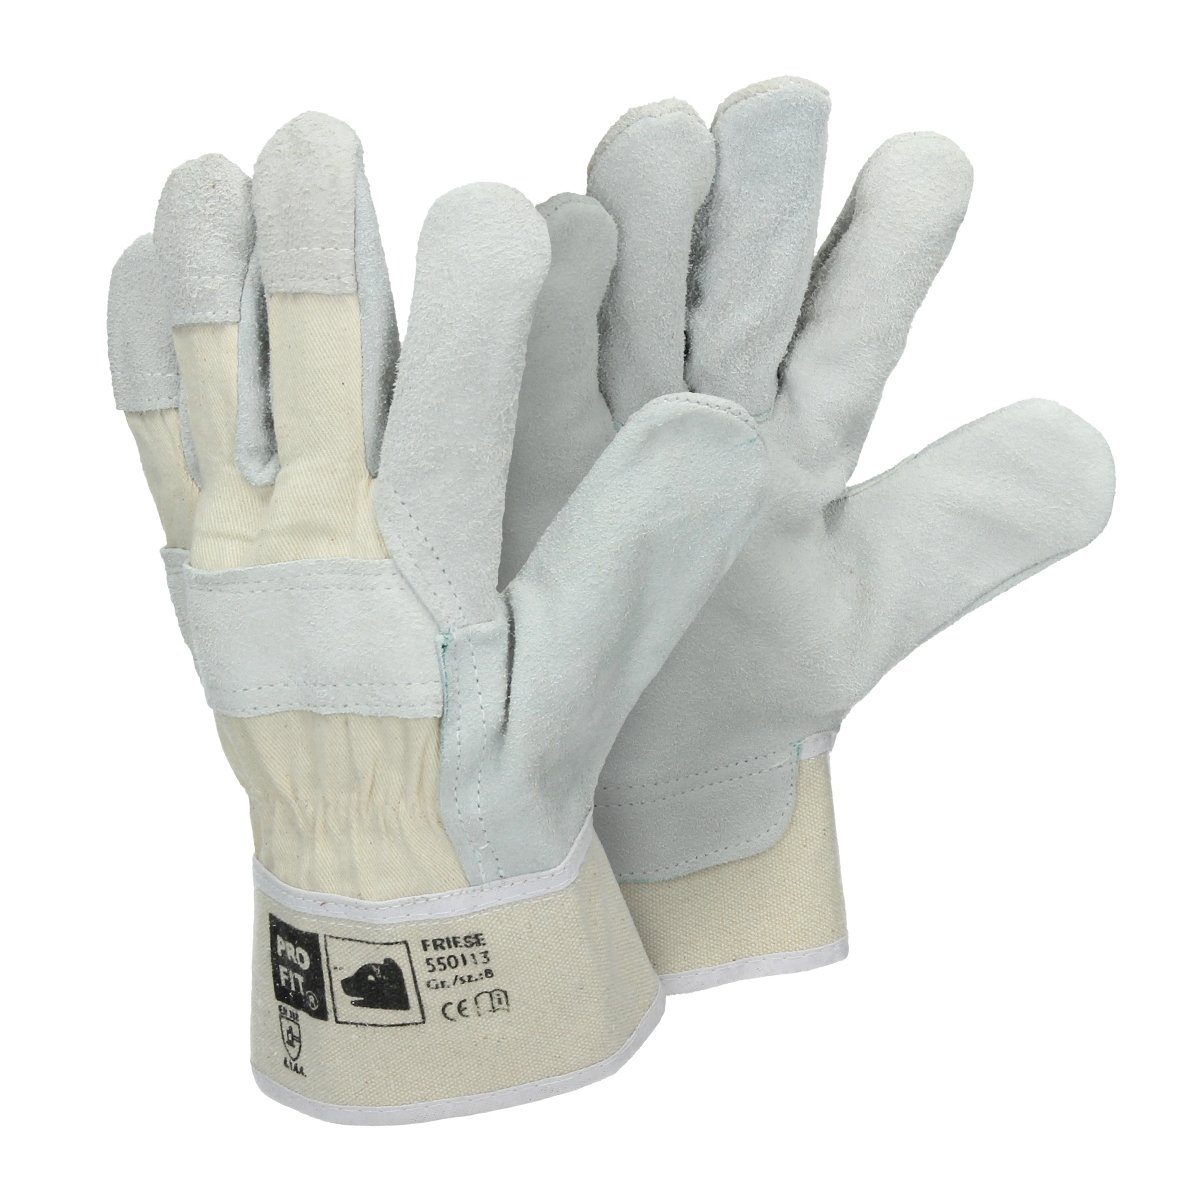 Rindspaltleder-Handschuhe Natur - Paar Größe 72 Pro-Fit® 8/M Germany Arbeitshandschuh-Set ECD